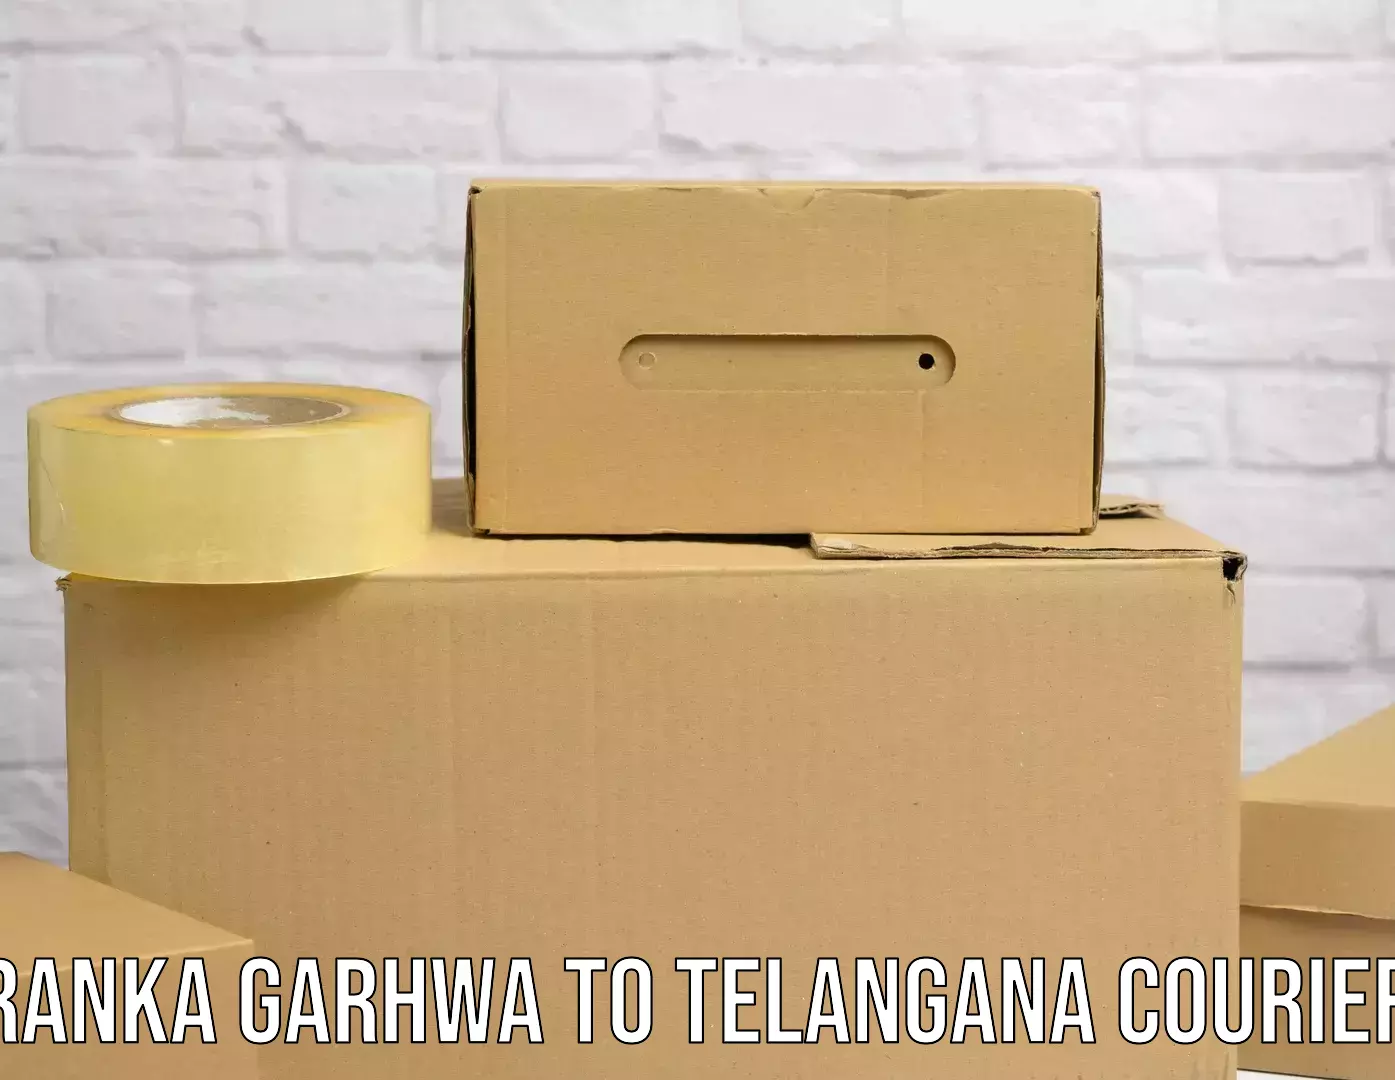 Efficient parcel service in Ranka Garhwa to Achampet